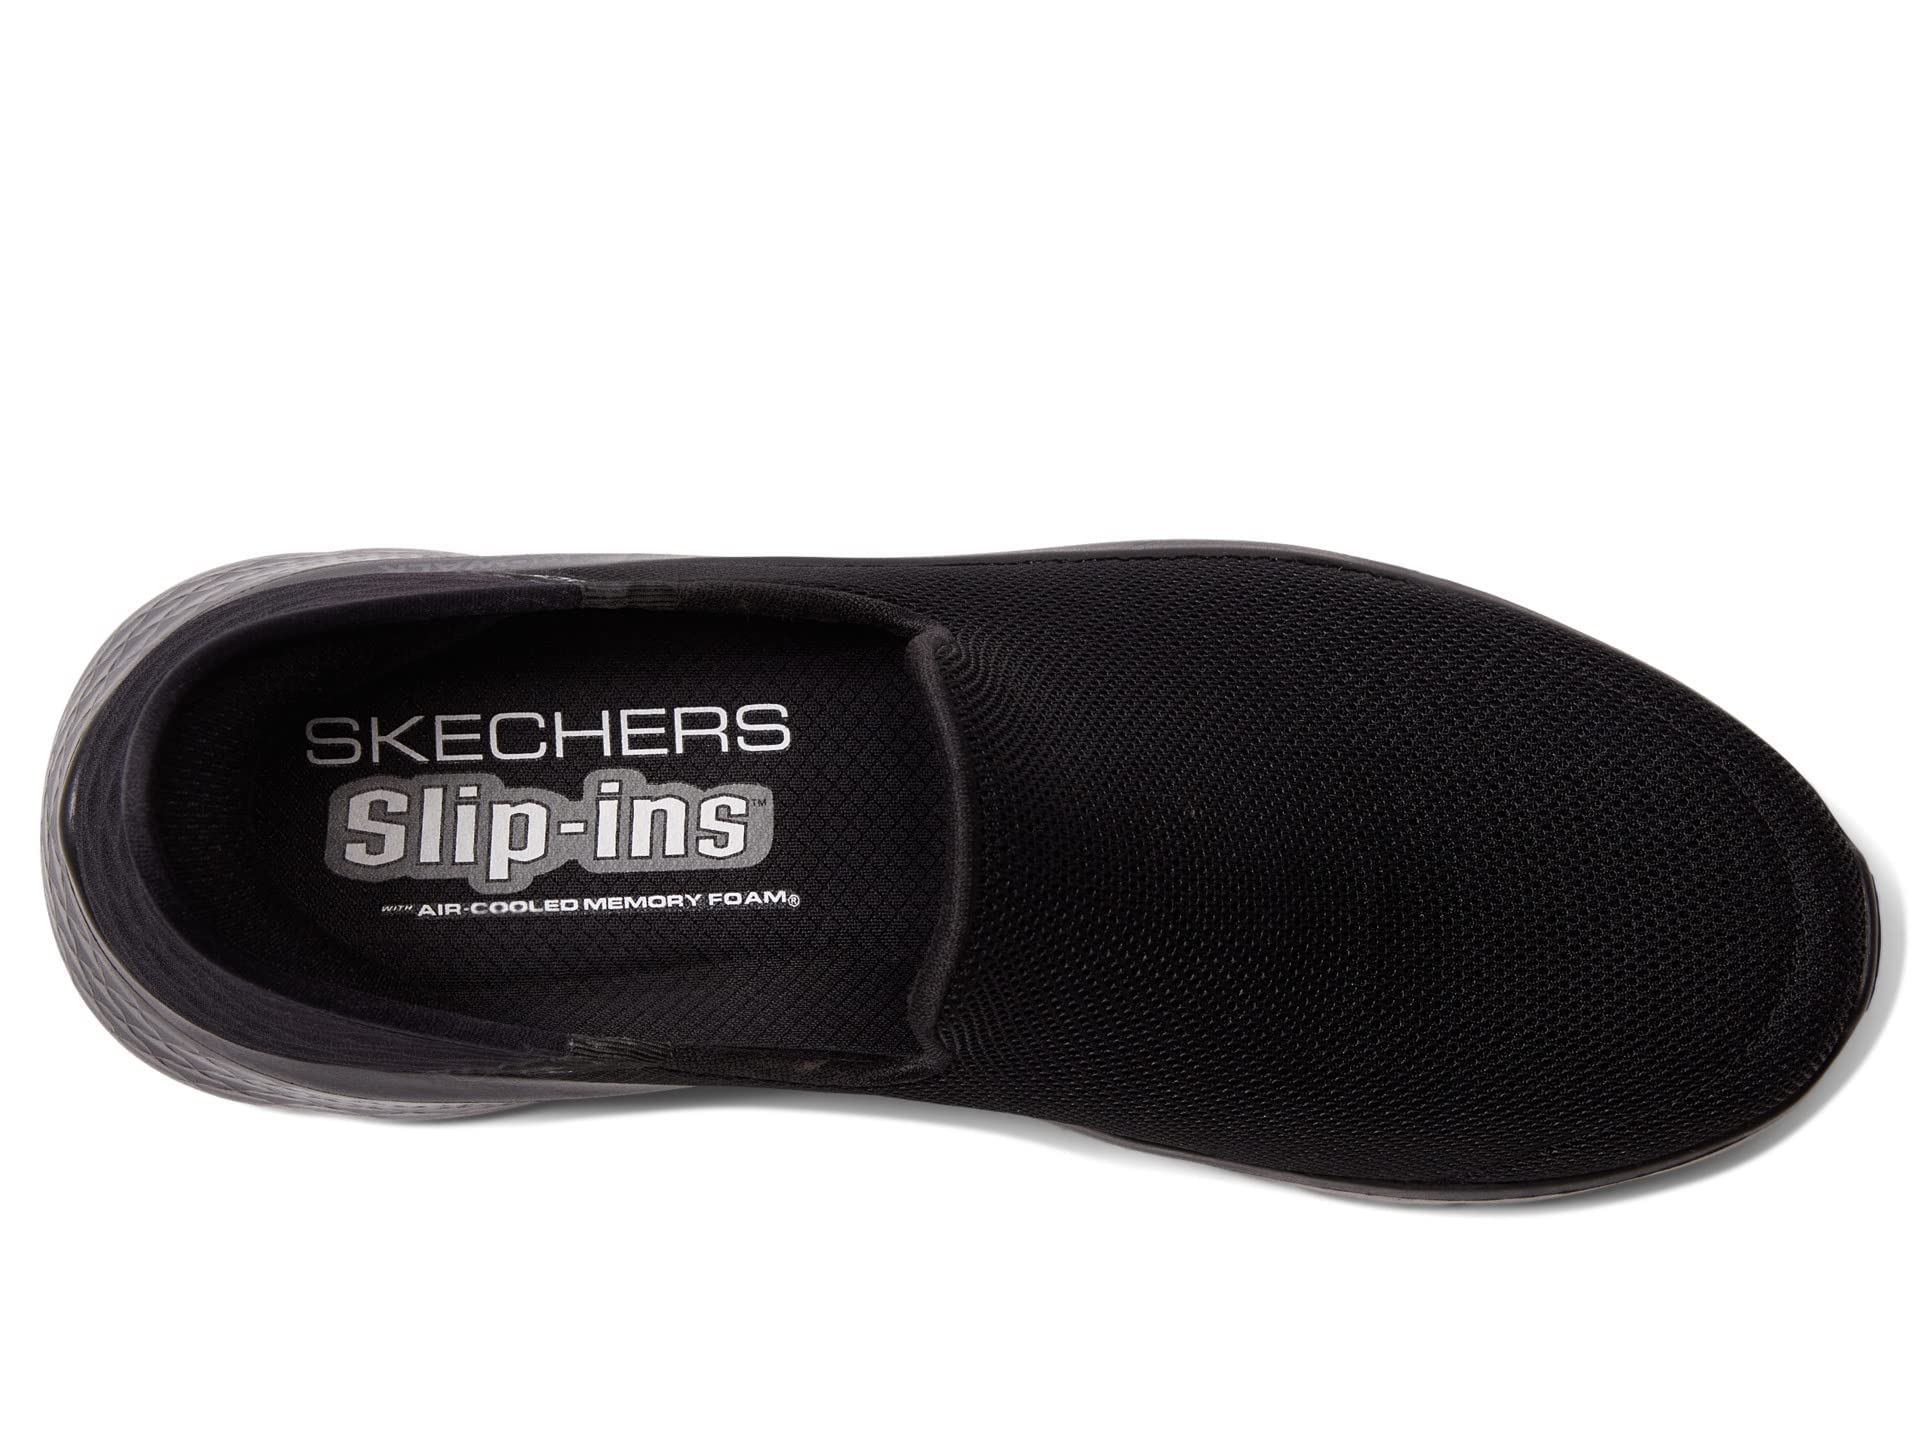 Skechers Men's Gowalk Flex Hands Free Slip-ins Athletic Slip-on Casual Walking Shoes Sneaker, Black, 12.5 X-Wide